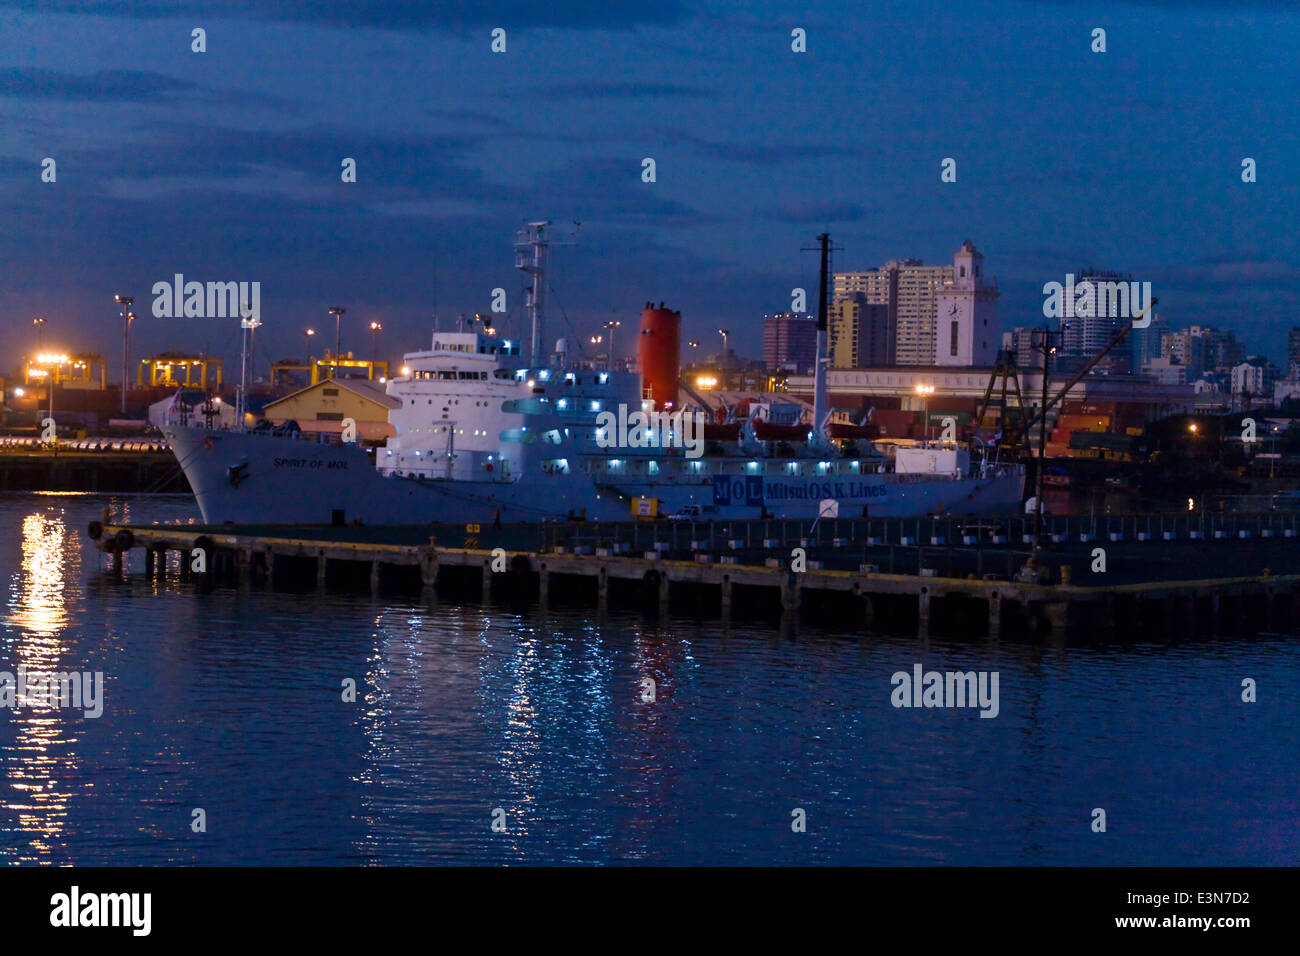 Ein Schiff am Dock in der Bucht von MANILA - MANILA, Philippinen Stockfoto